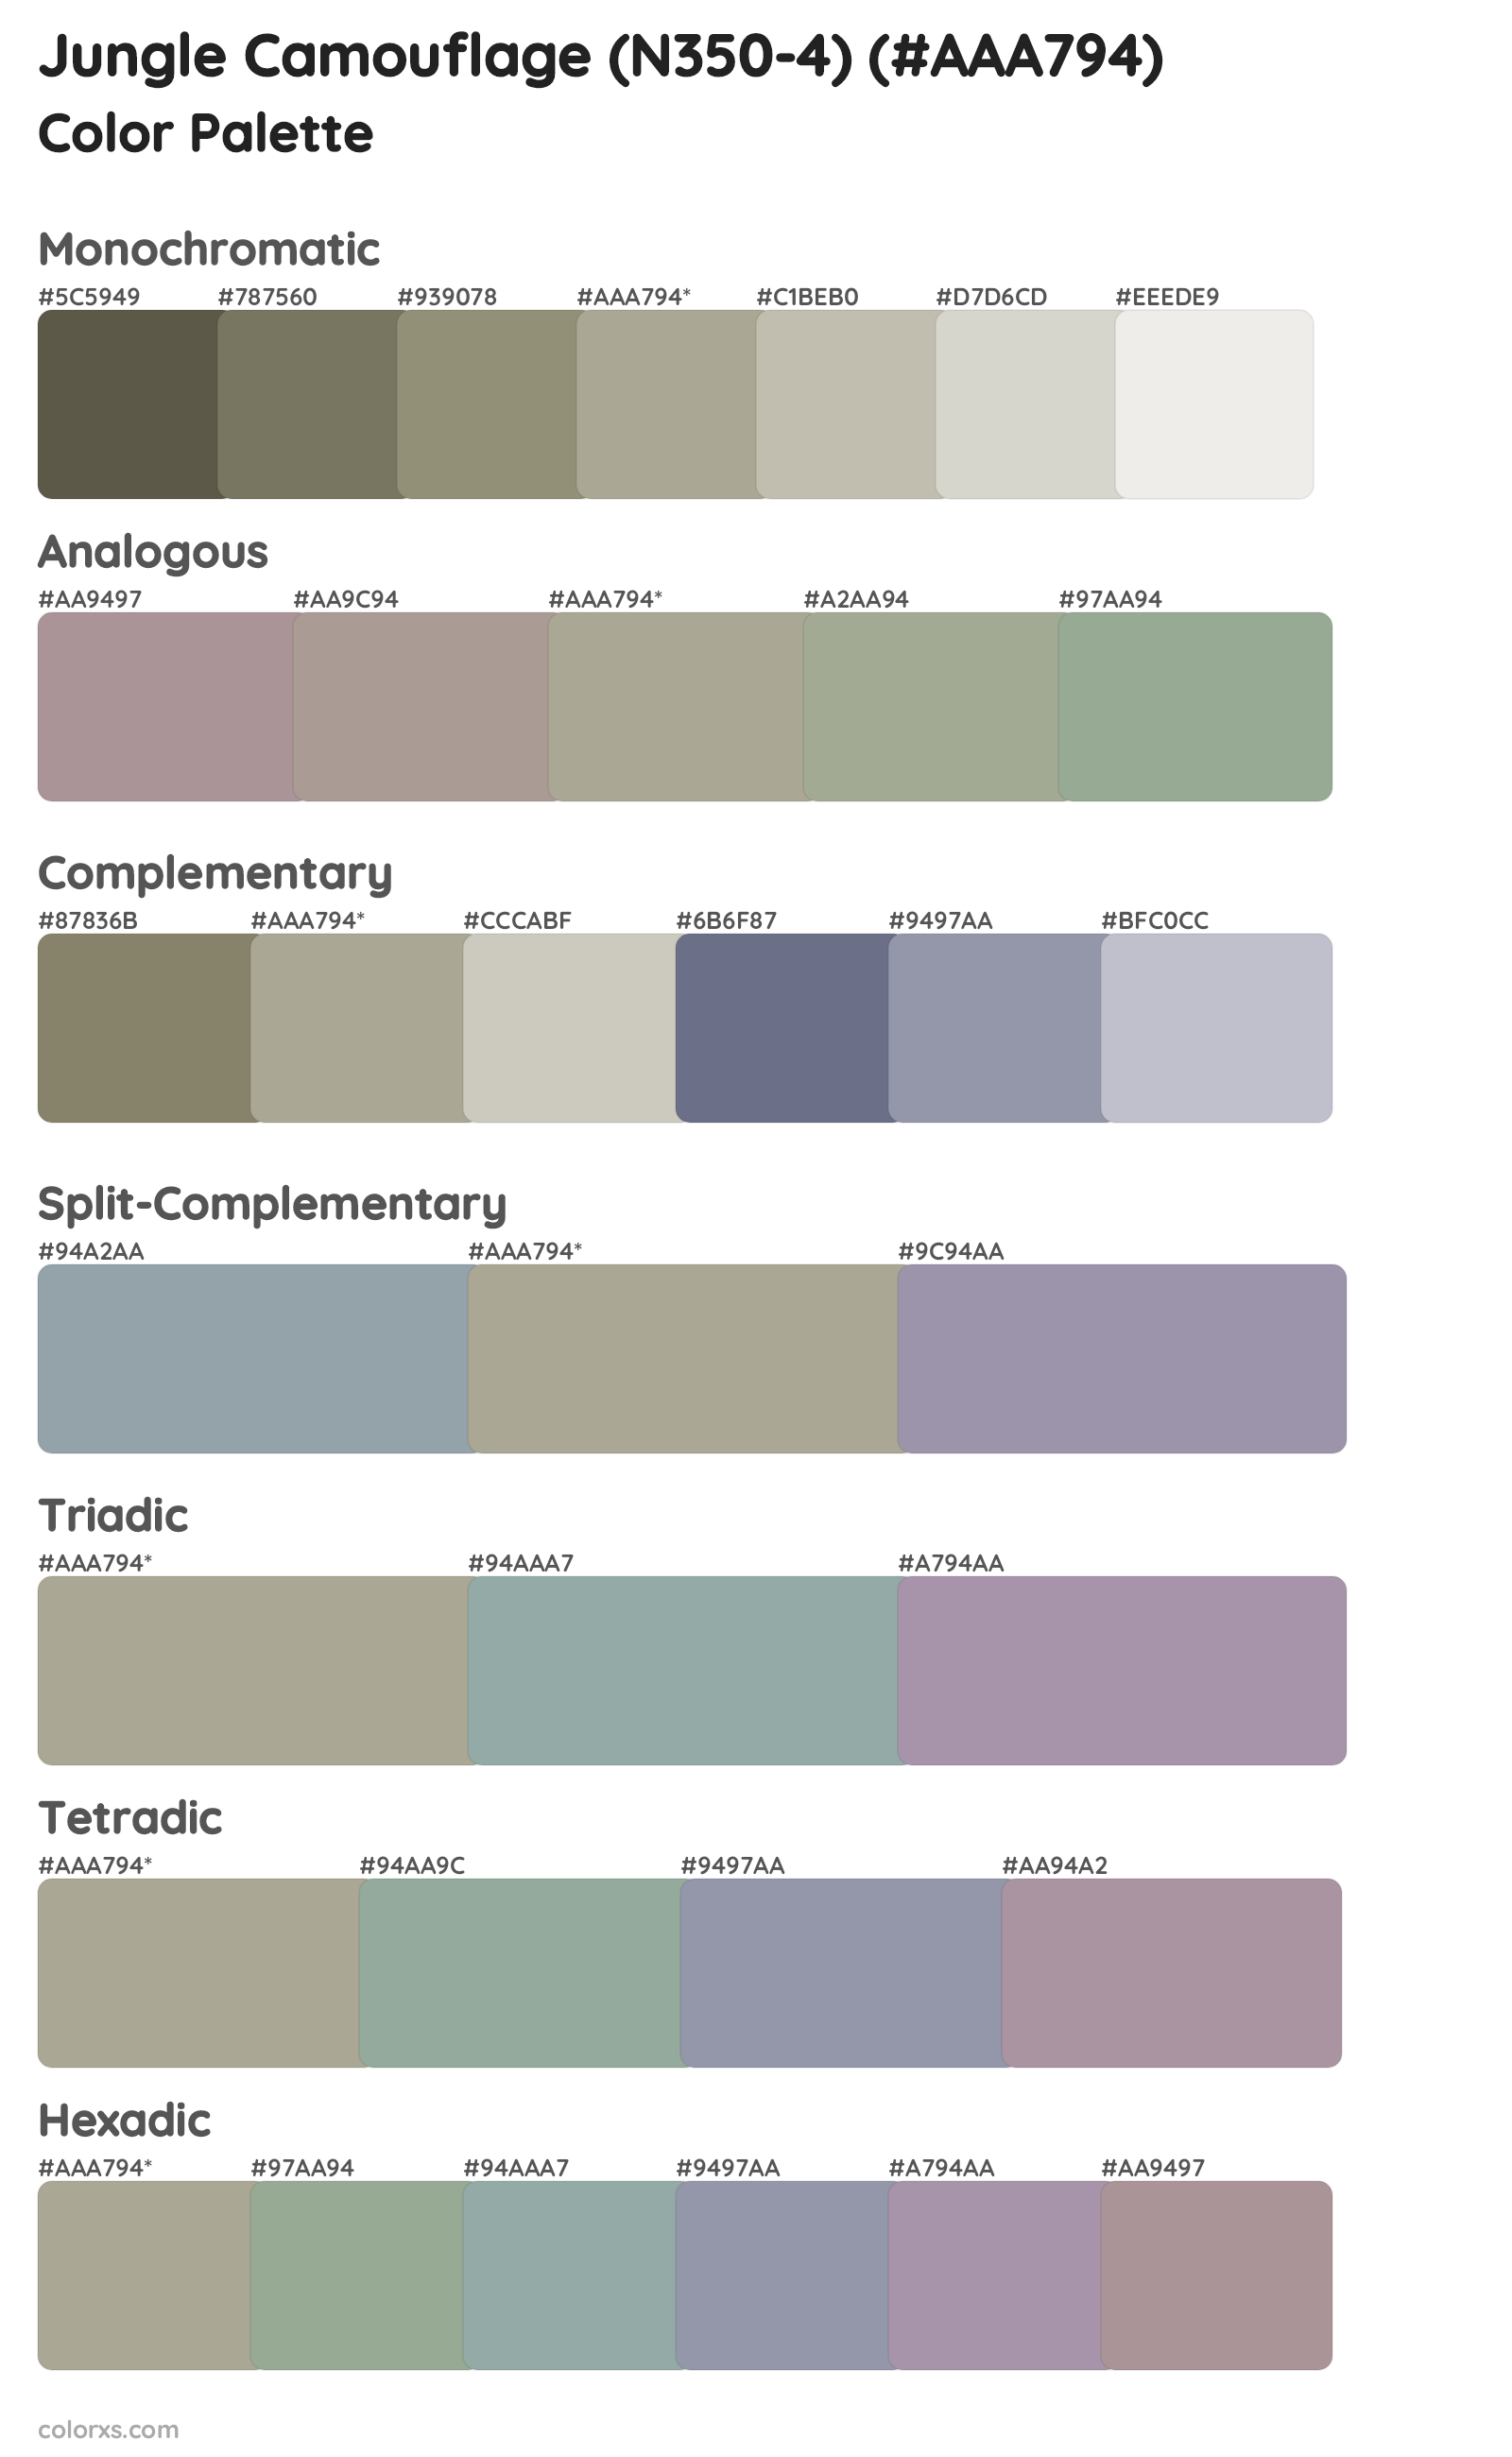 Jungle Camouflage (N350-4) Color Scheme Palettes